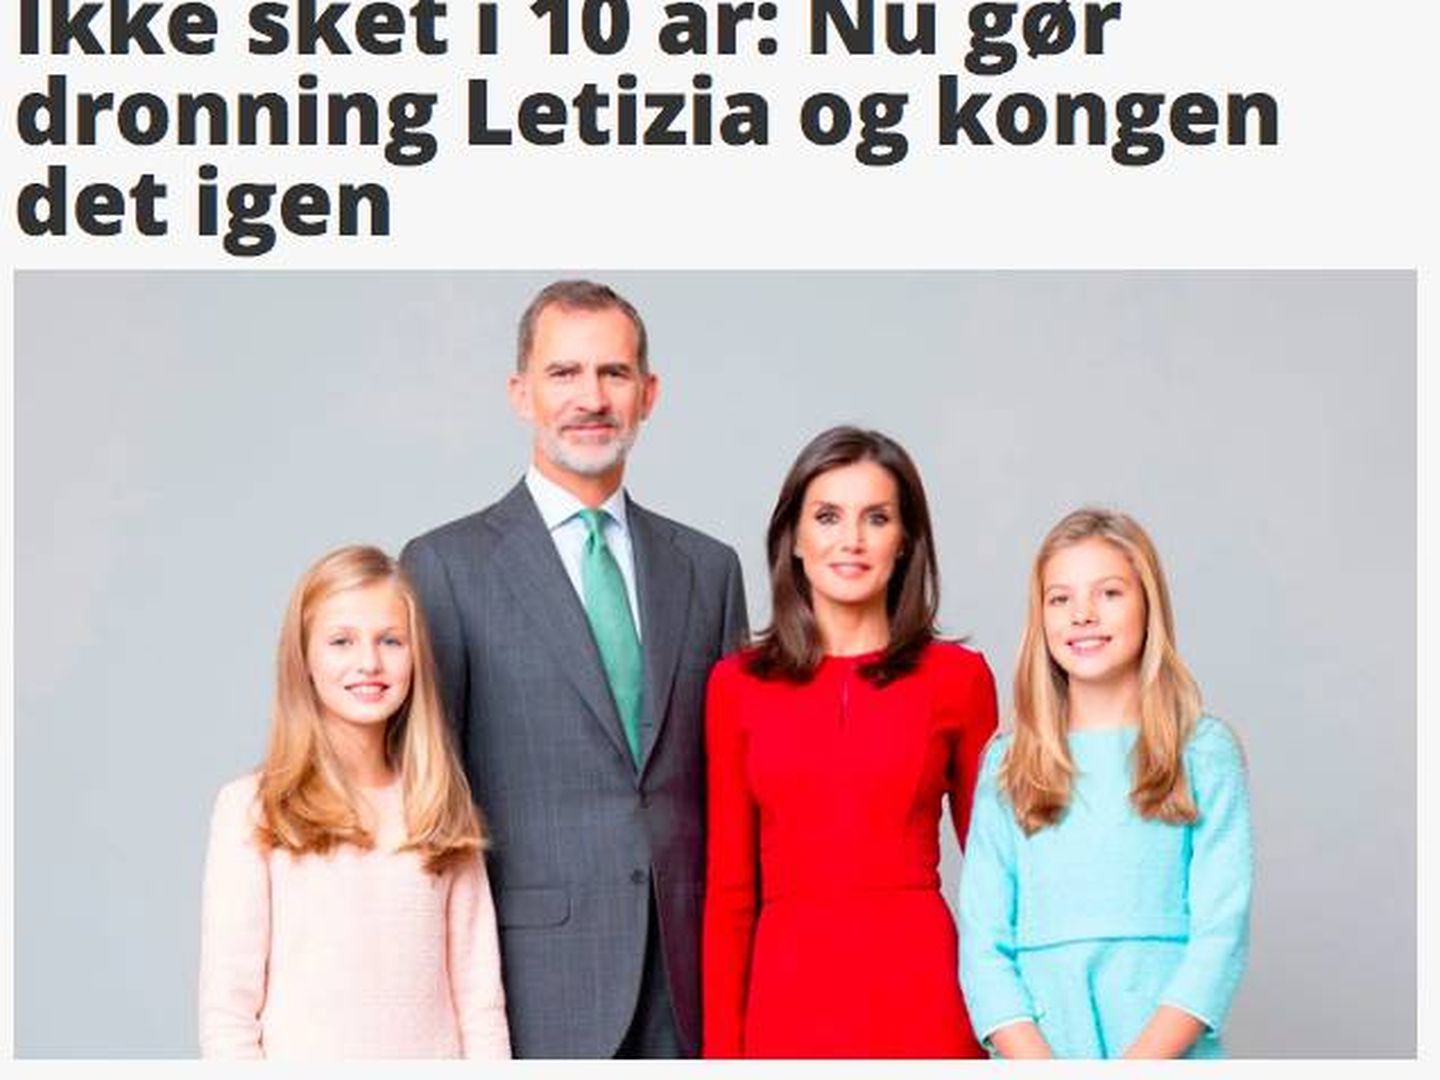 Las fotografías oficiales de los reyes y sus hijas en el portal danés 'Billed Bladet'.